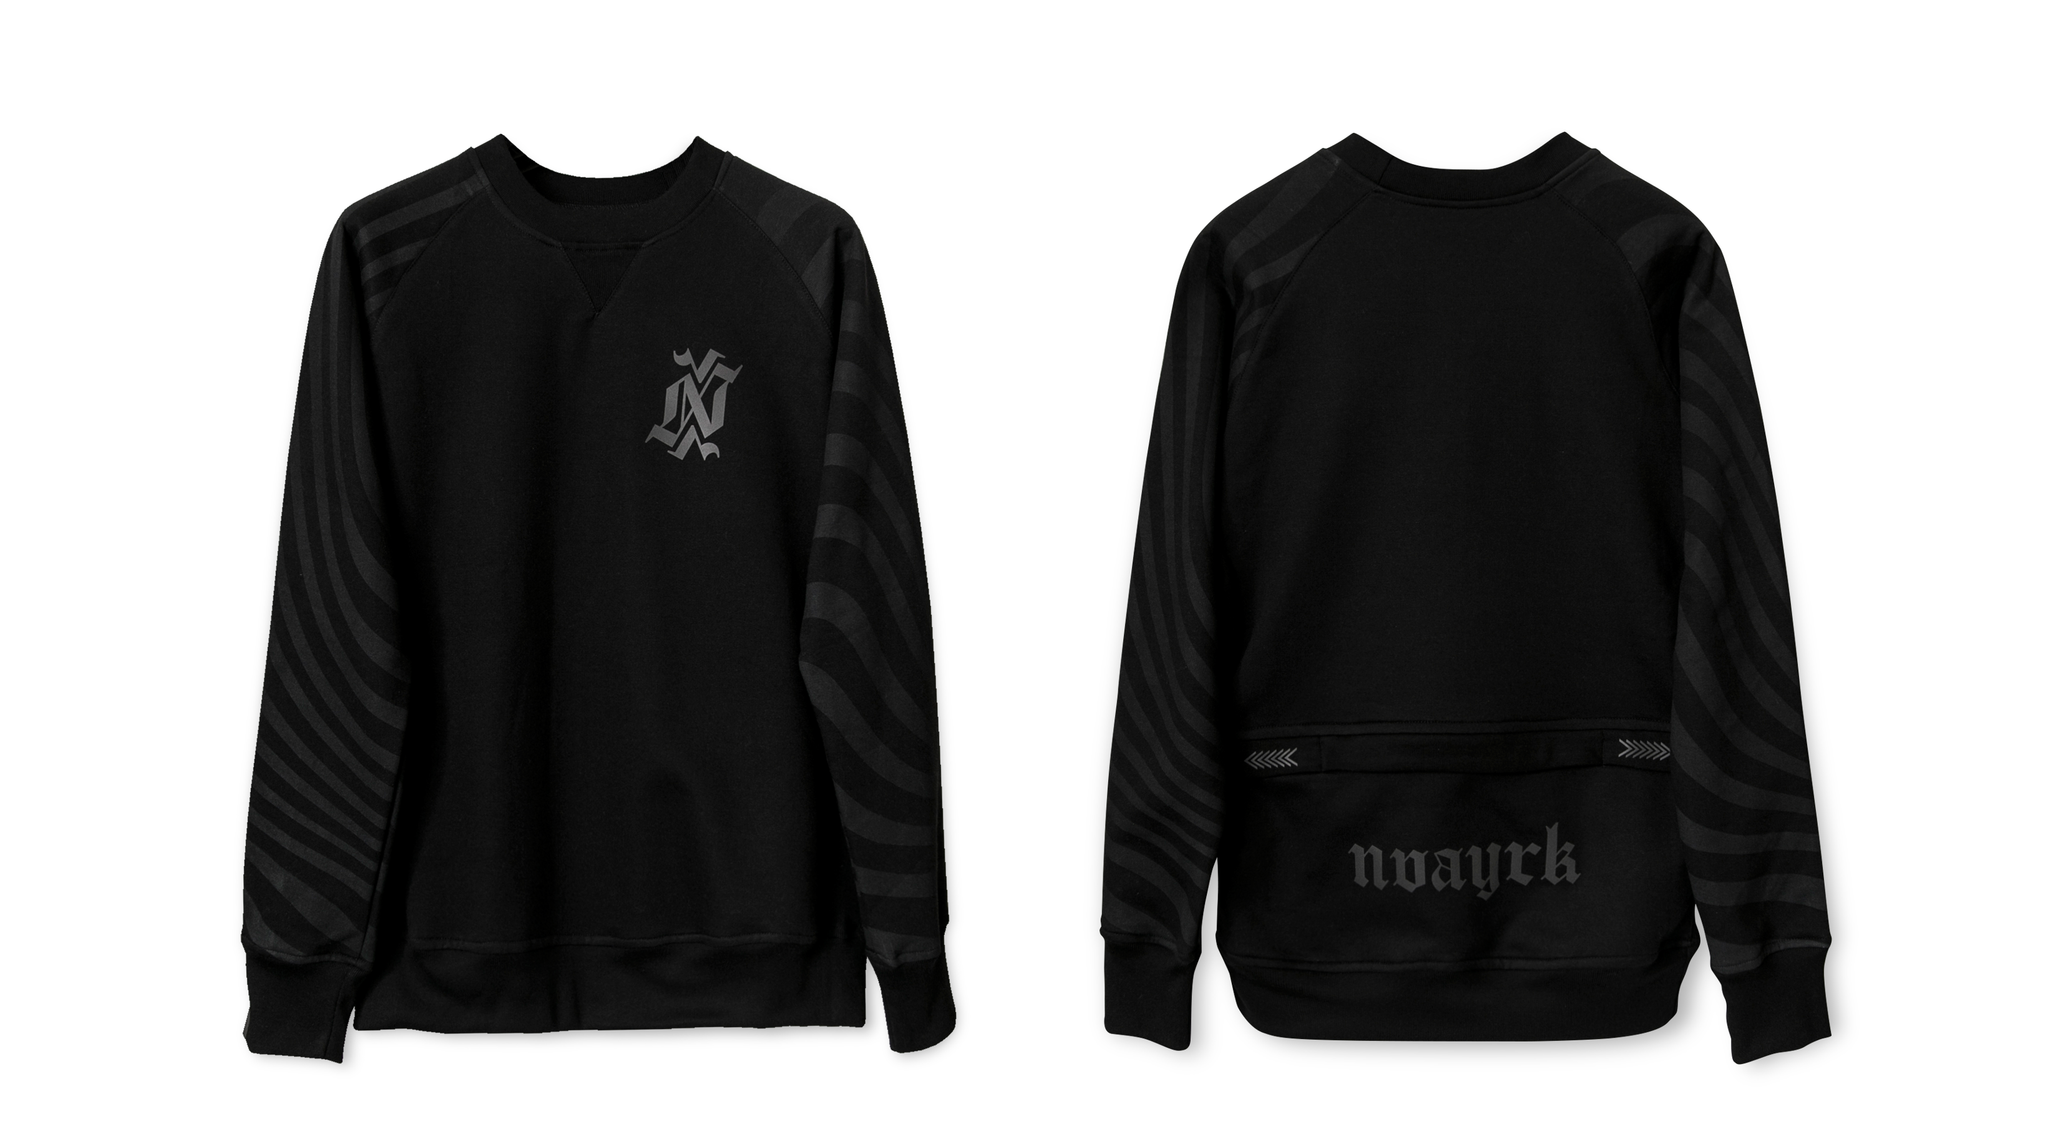 NVAYRK Gothique Sweatshirt (Reflective)